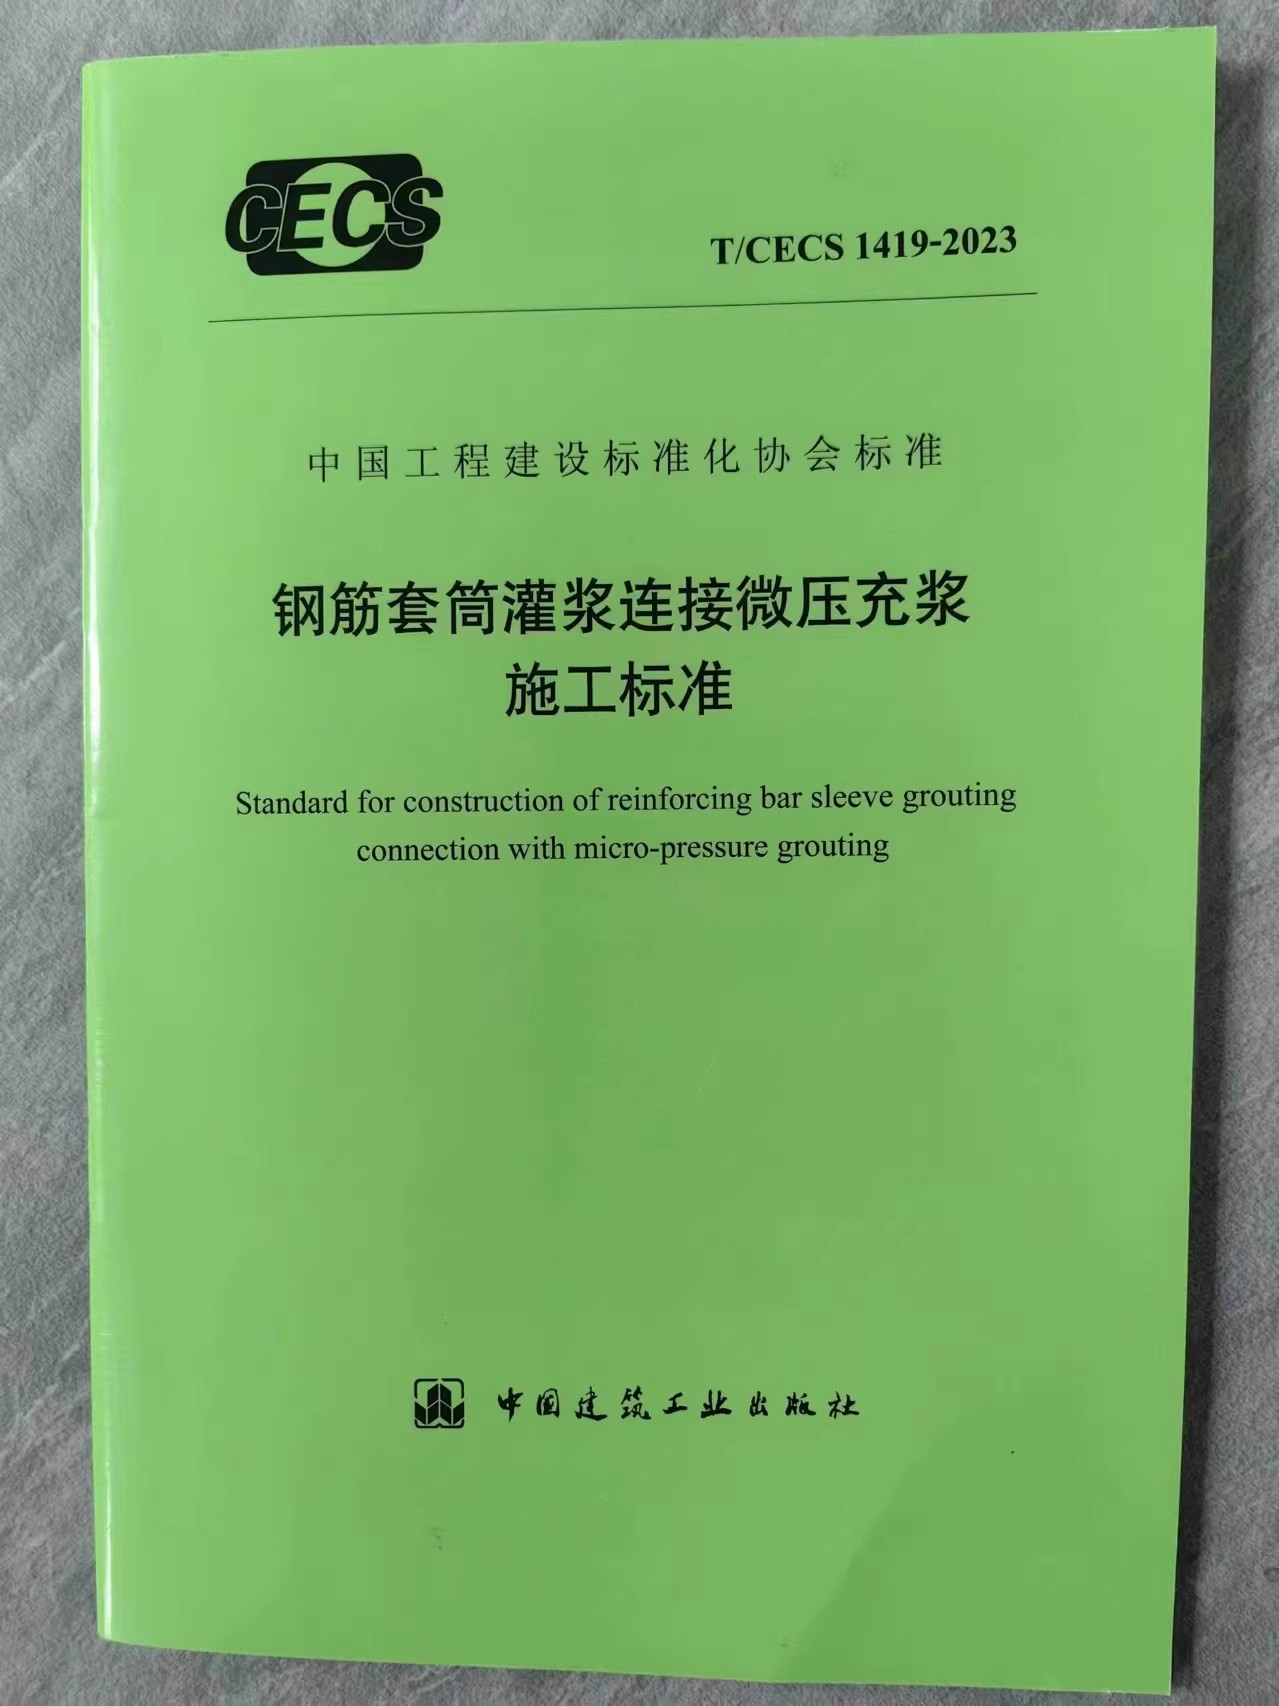 T/CECS 1419-2023 钢筋套筒灌浆连接微压充浆施工标准